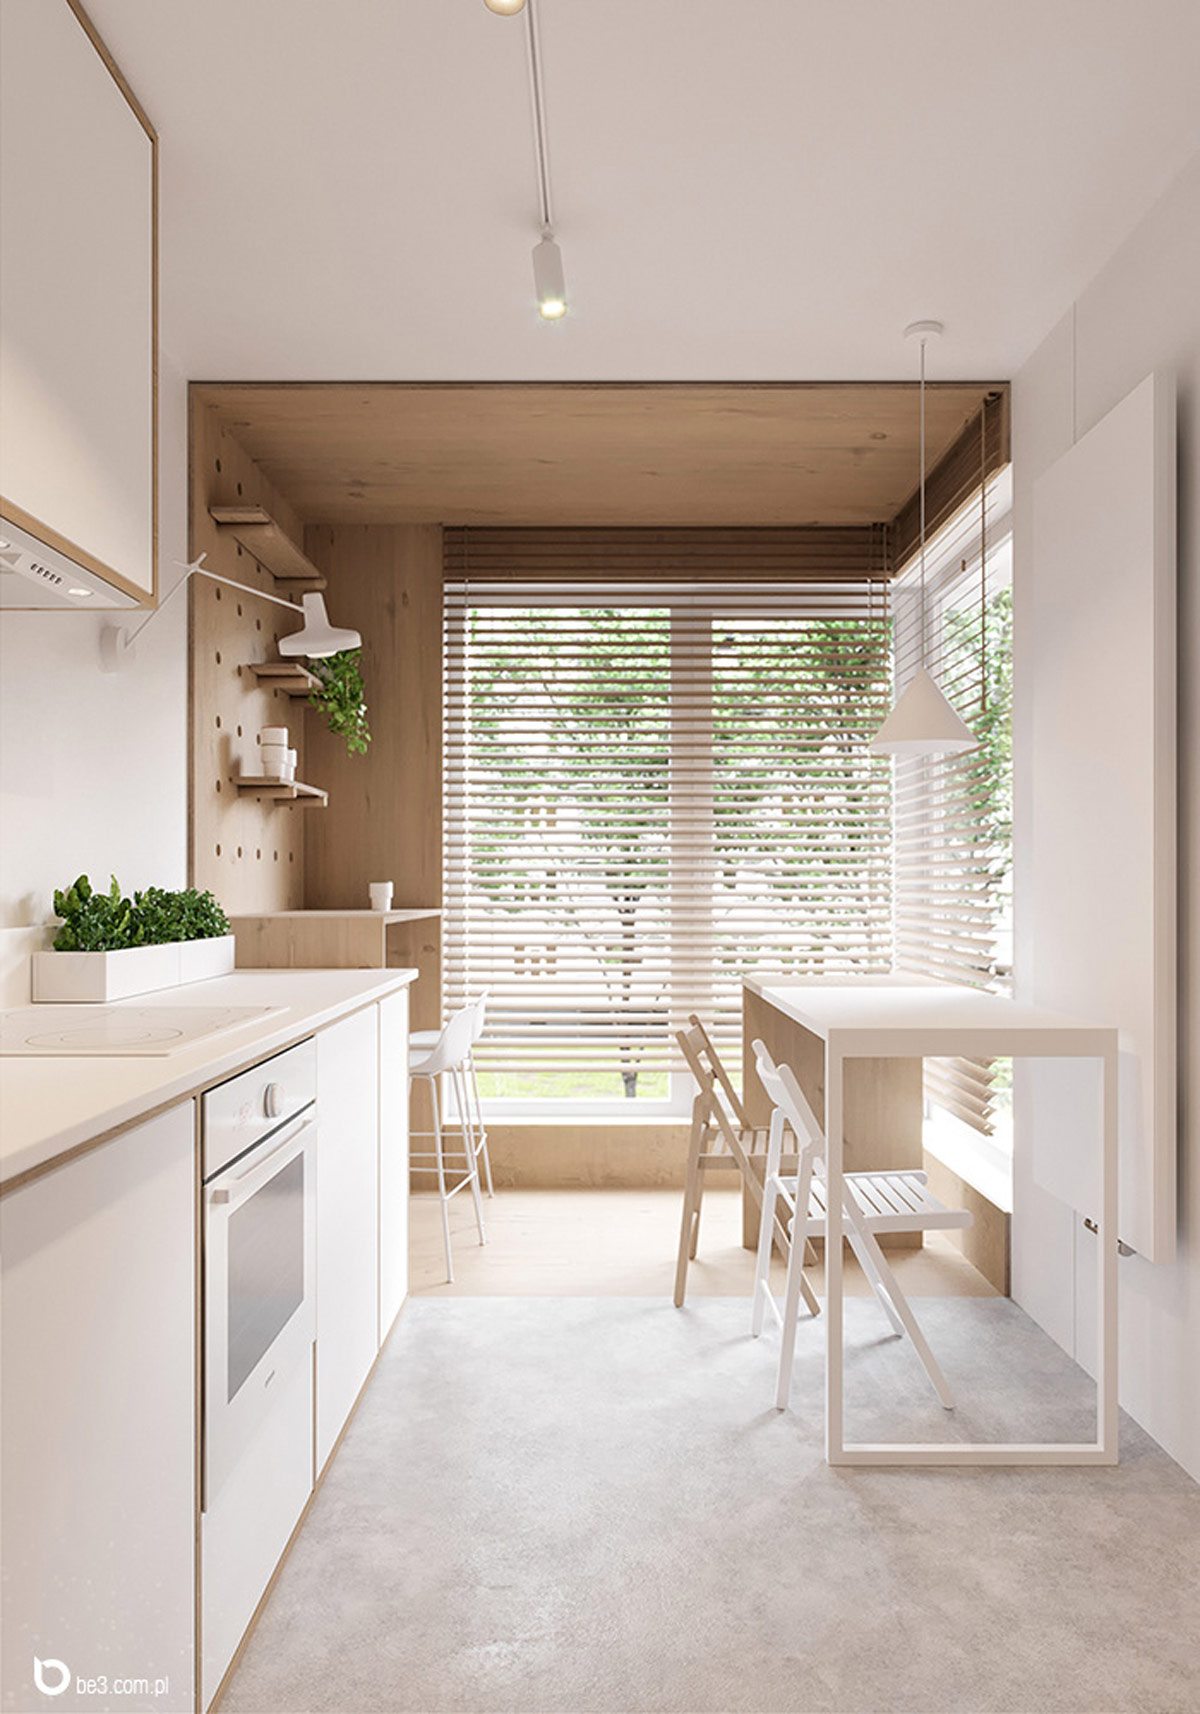 清新自然的绿植：5个美丽简洁的公寓设计